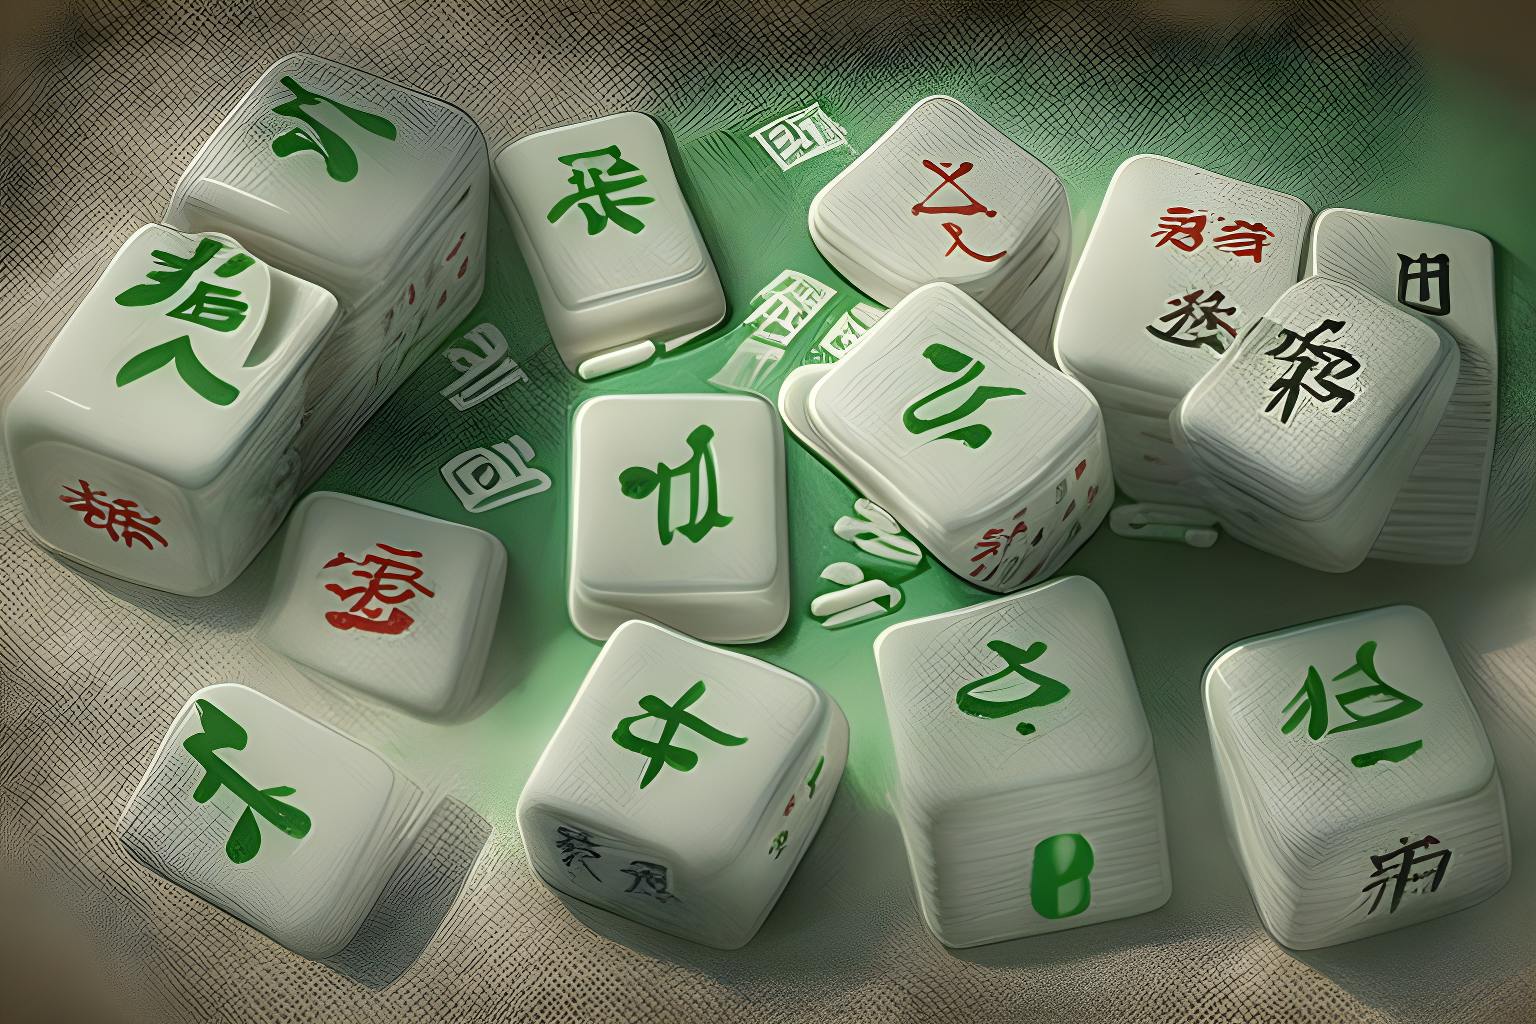 0xMahjong NFT начнет бесплатную чеканку — мета-игра Mahjong ожидает финансирования на сумму более 10 миллионов долларов